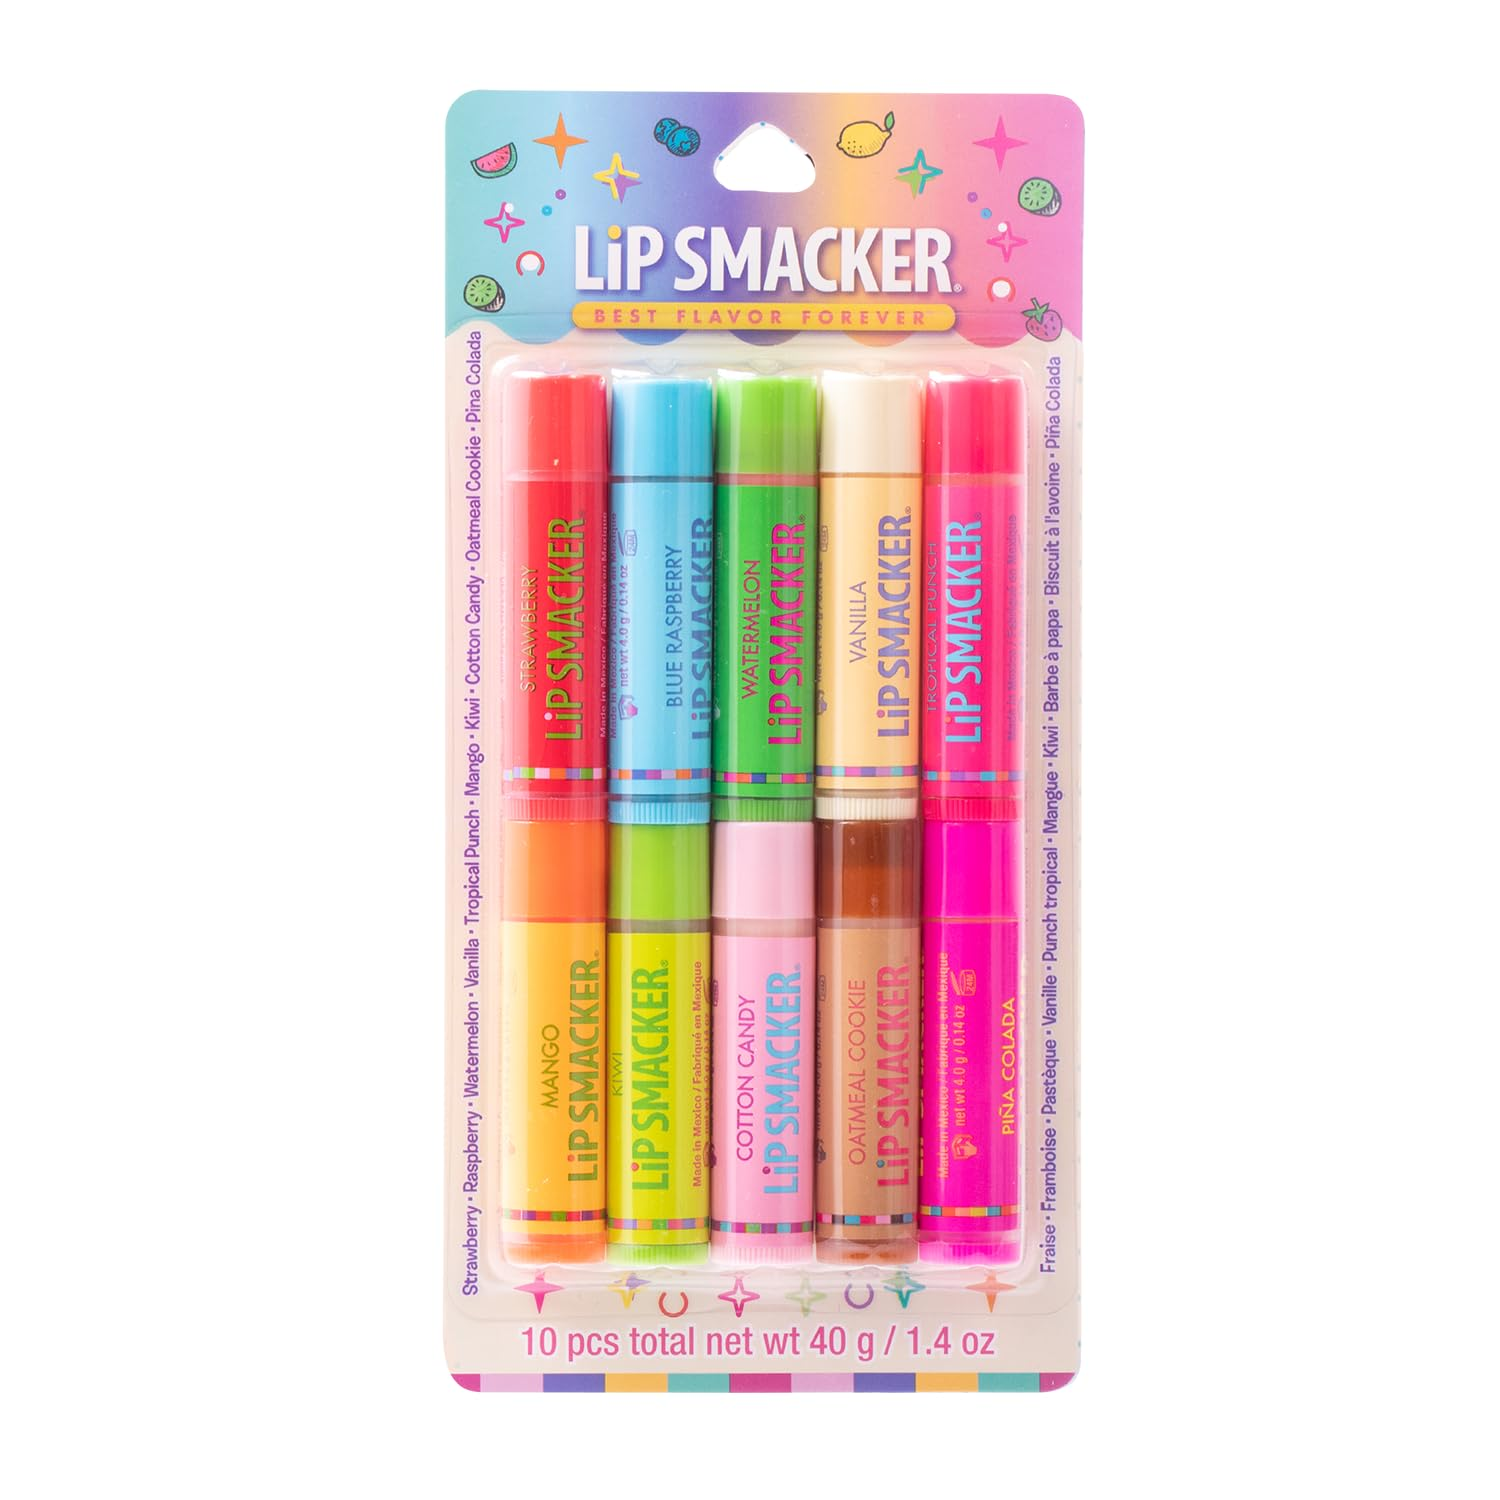 Lip Smacker Original & Best 10 Piece Lip Balm Party Pack $7.44